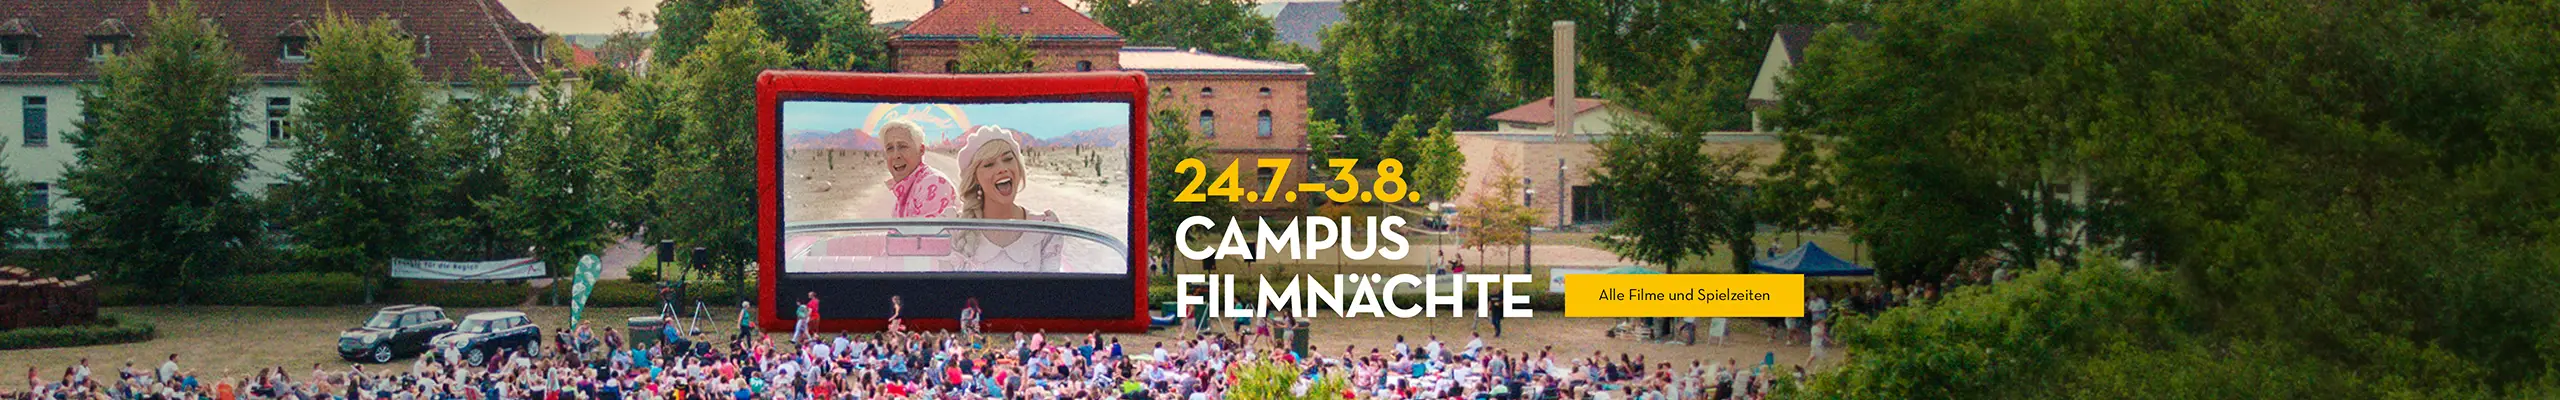 Campus Filmnächte vom 24.7. bis 3.8.